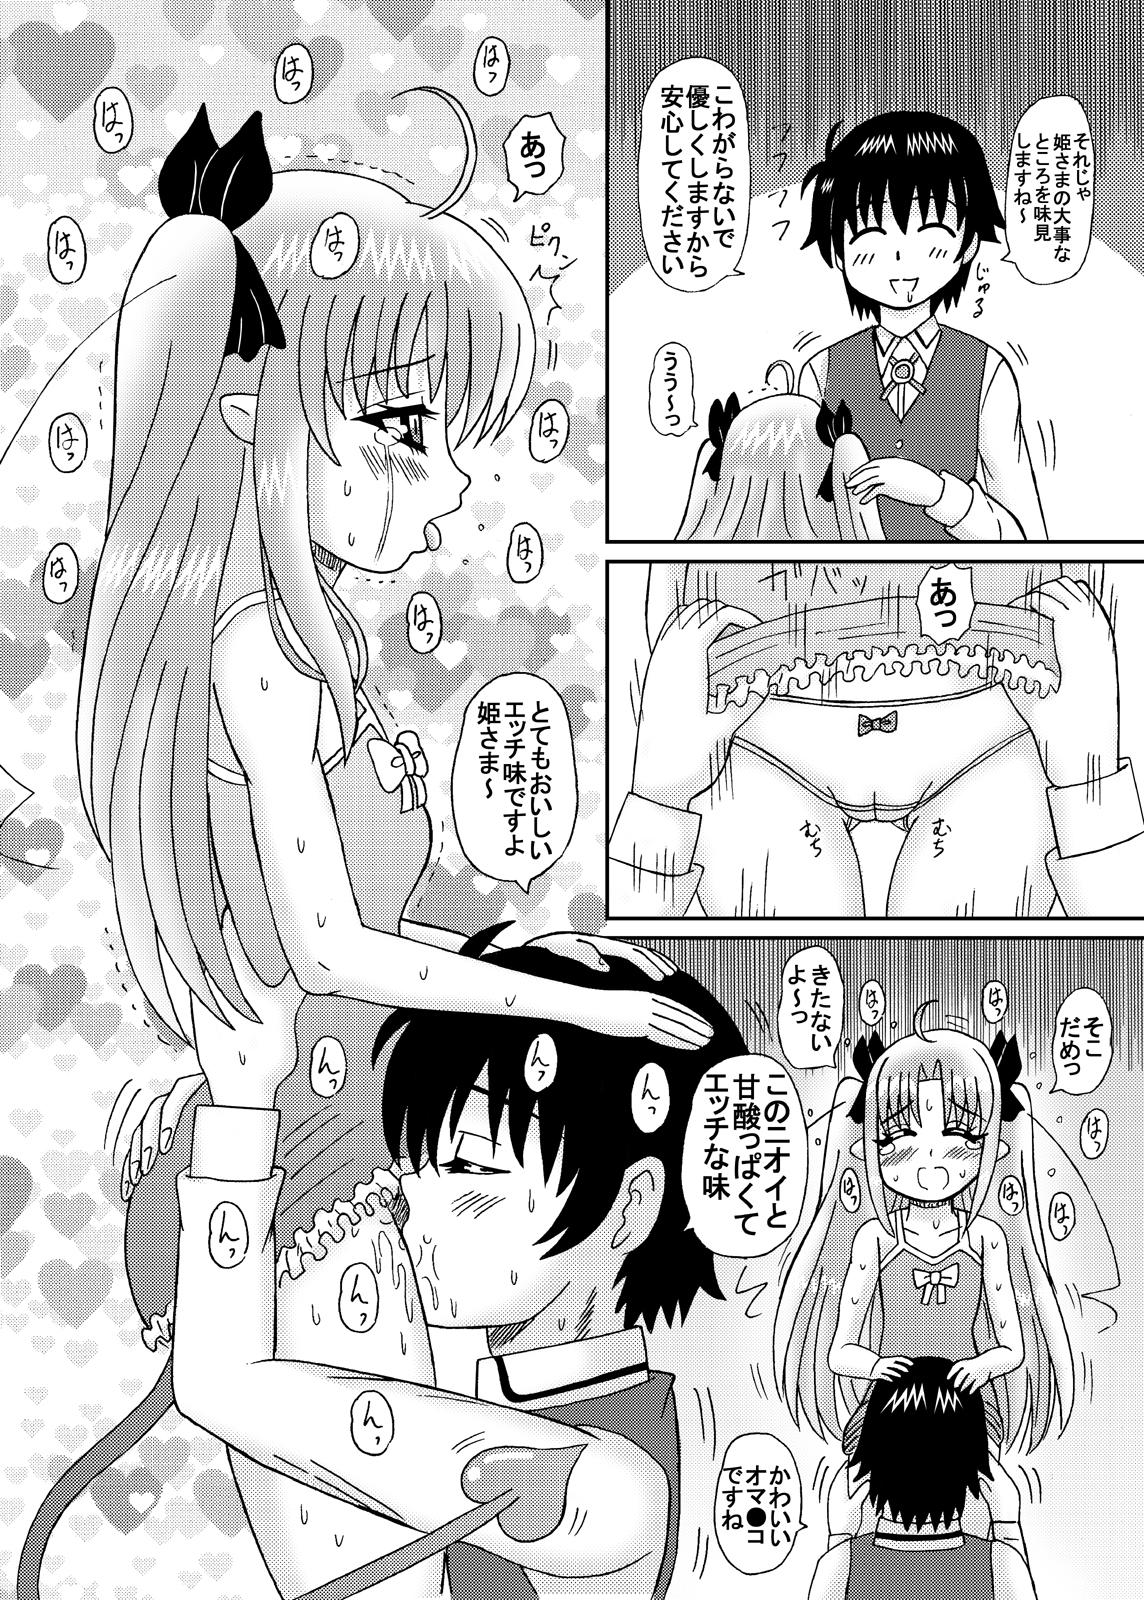 Teamskeet Hime-sama no Tsubomi - Lotte no omocha Teen - Page 7